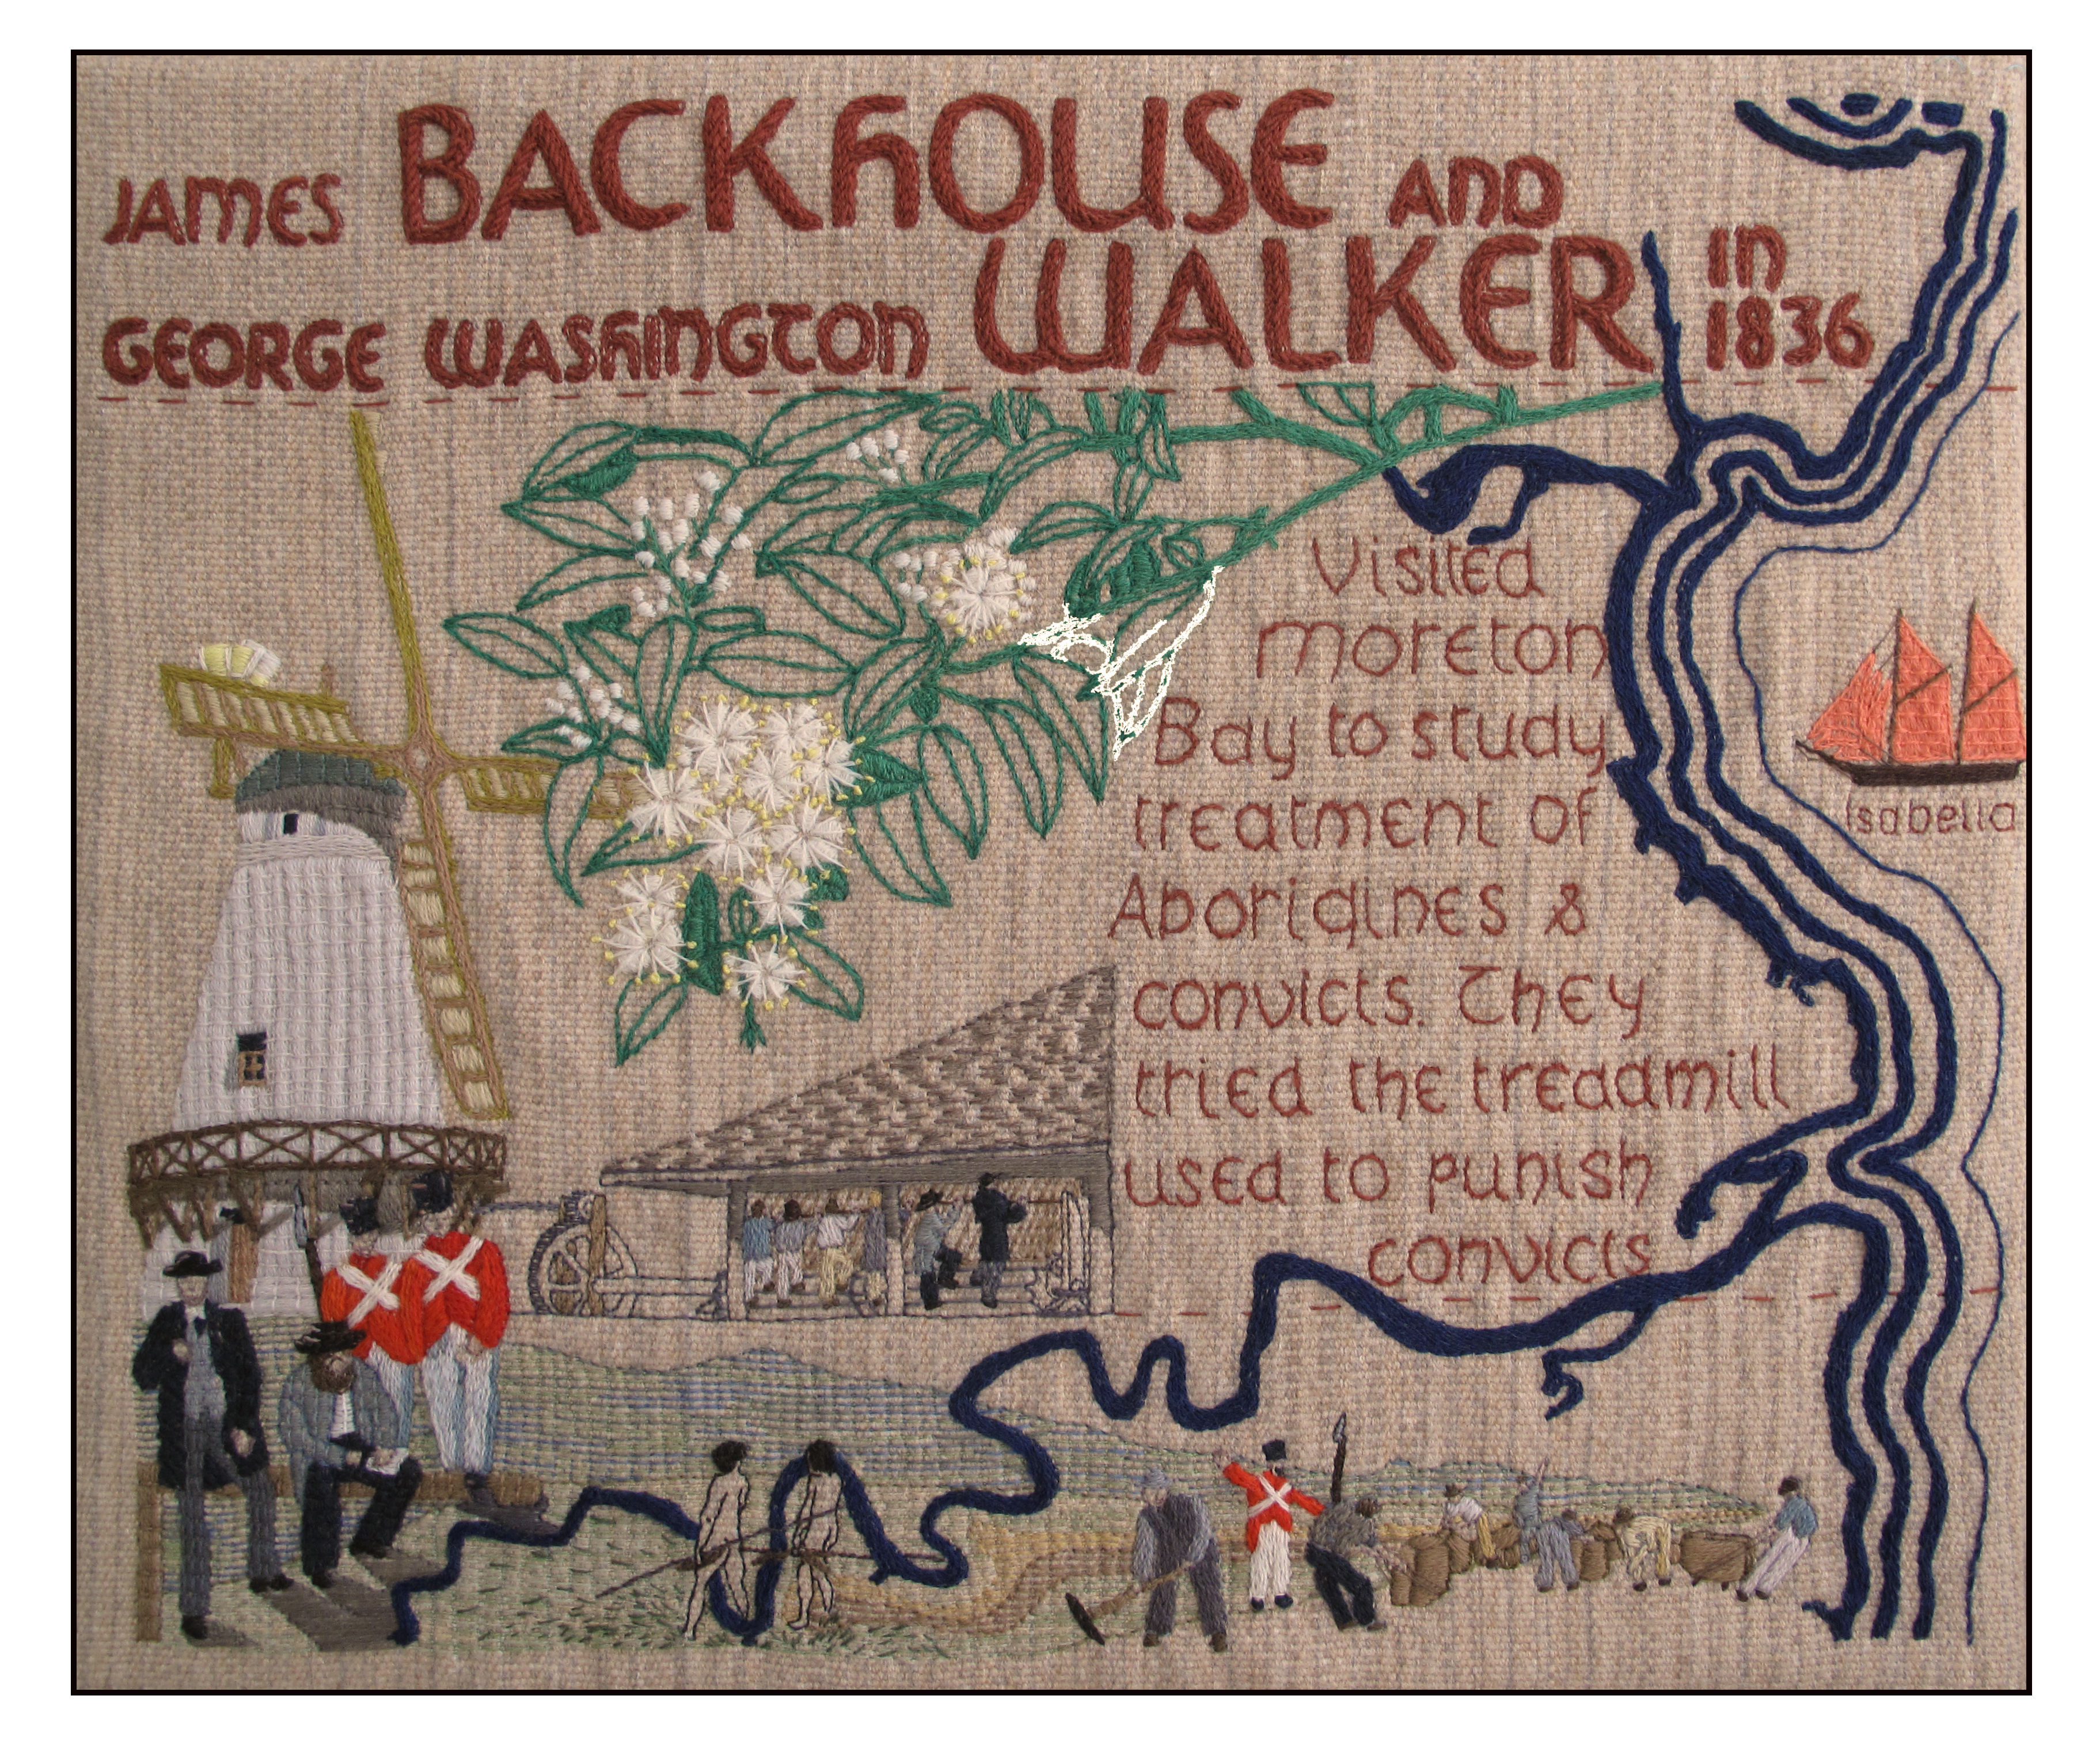 Backhouse and Walker in Queensland